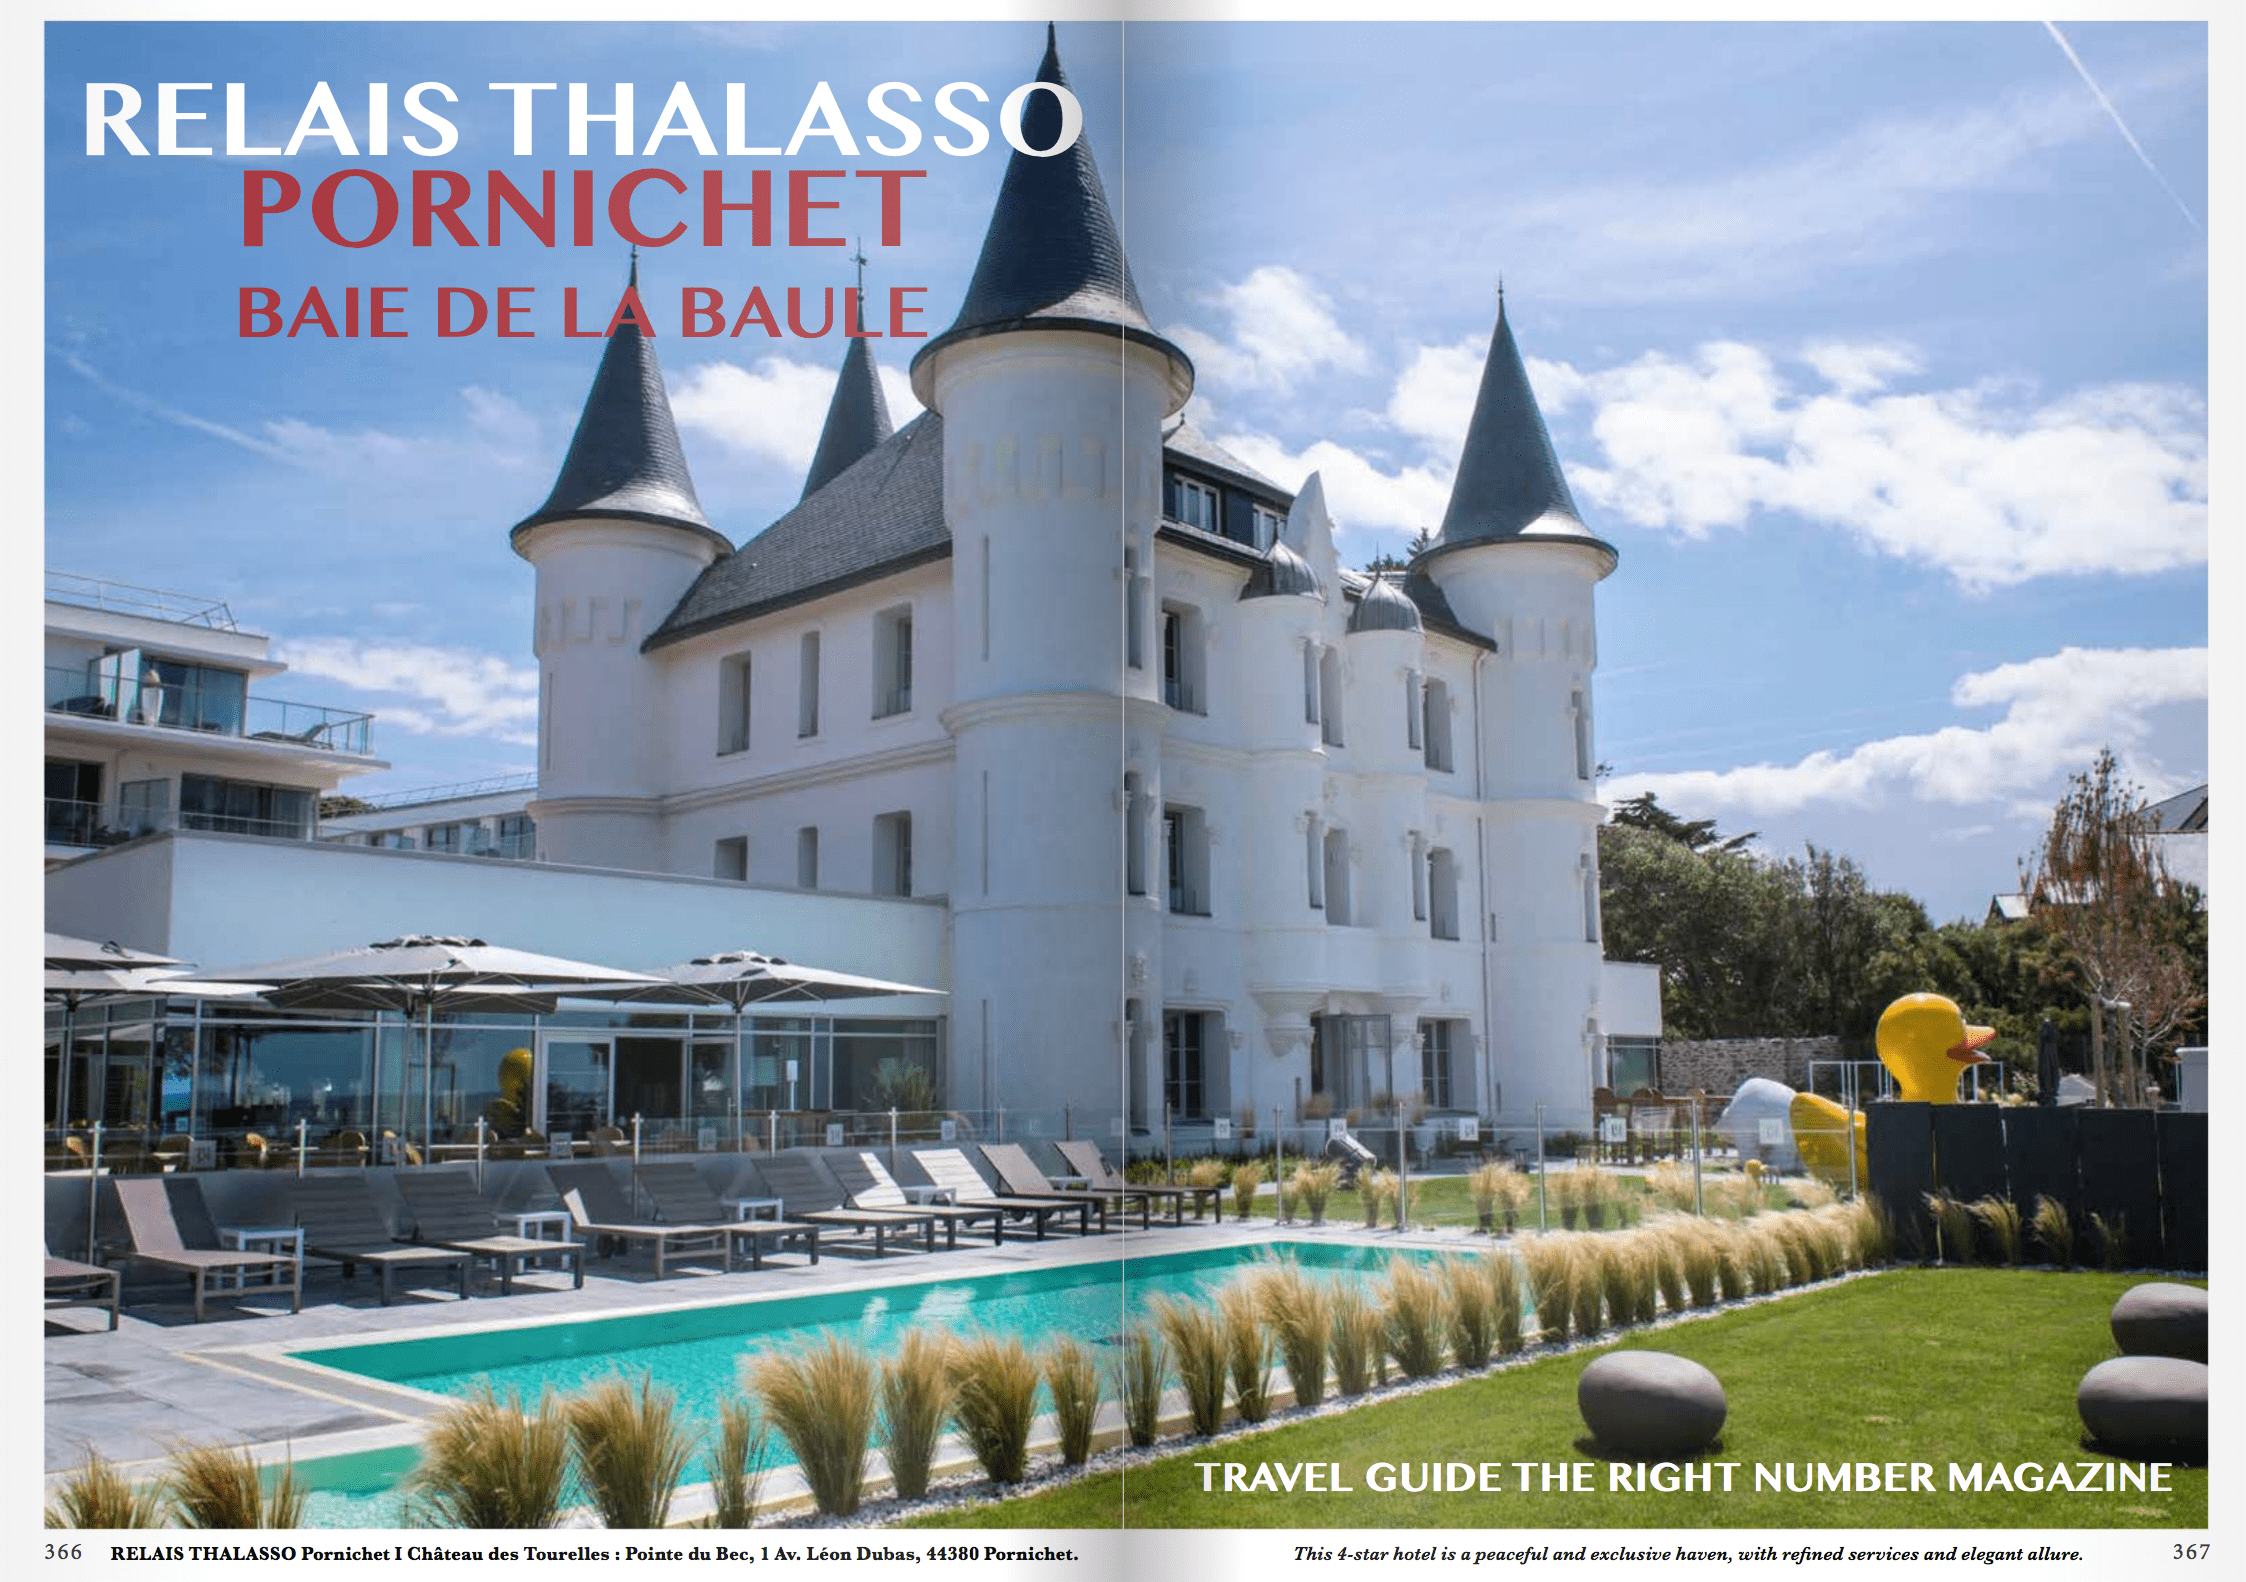 1-Relais-Thalasso-Pornichet-Baie-de-la-Baule-Chateau-des-Tourelles